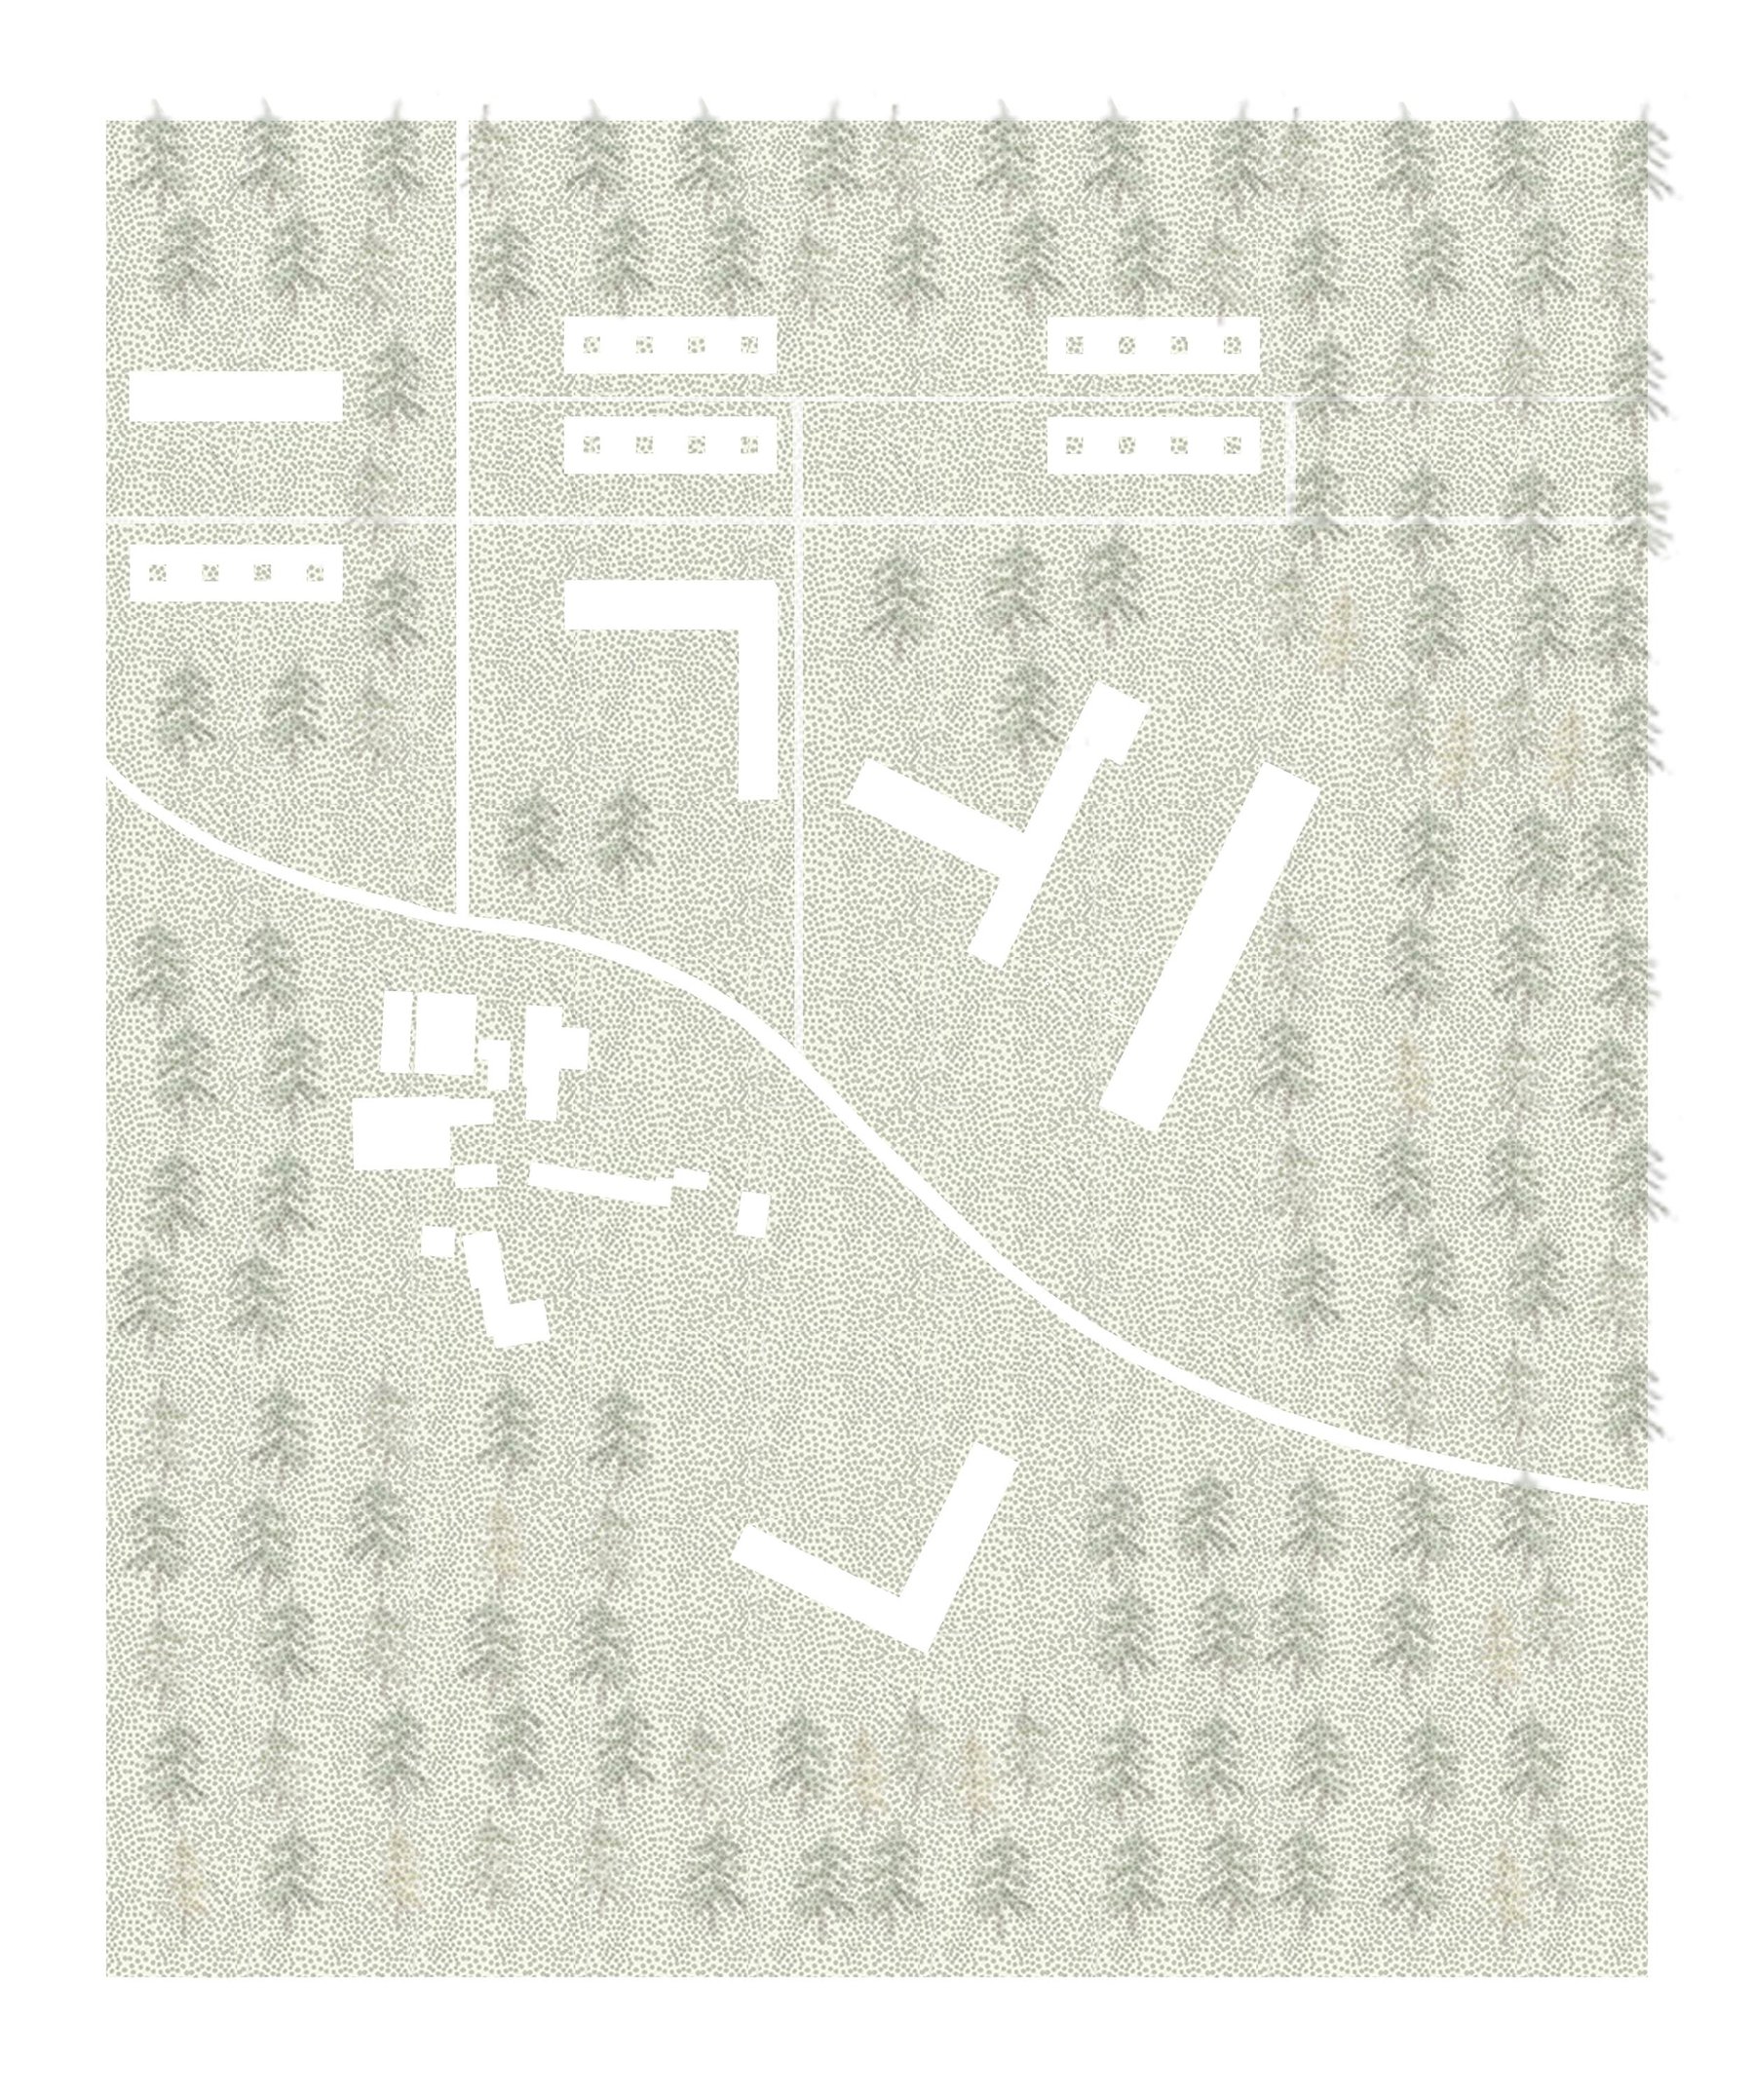 Karolina Pawlowska, Site Development Around The Existing Vearse Farm Buildings (1).jpg